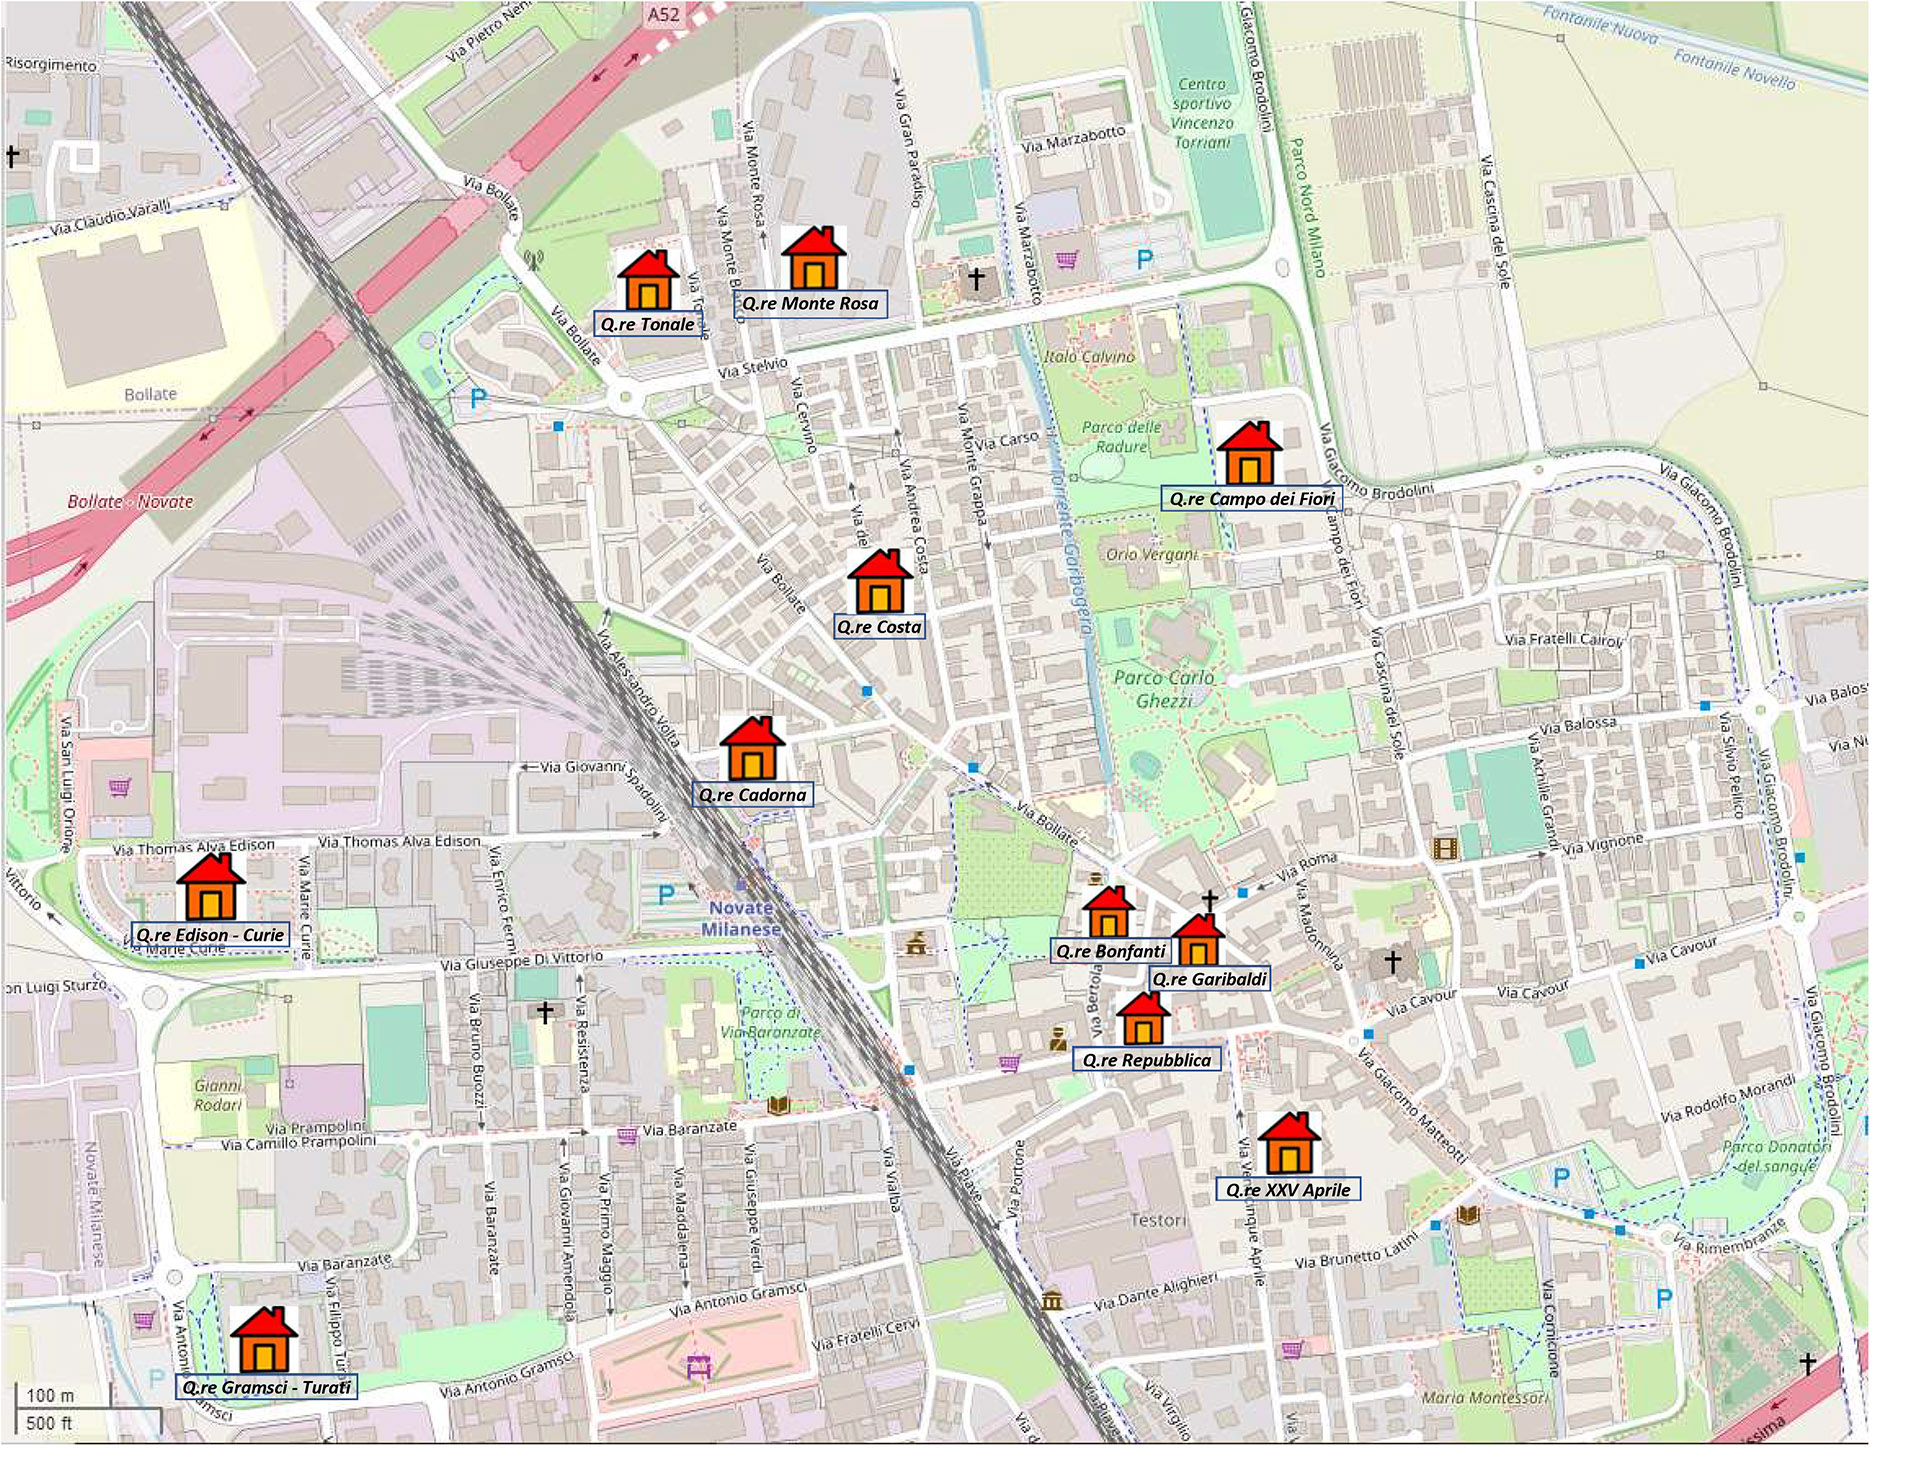 Mappa dei quartieri